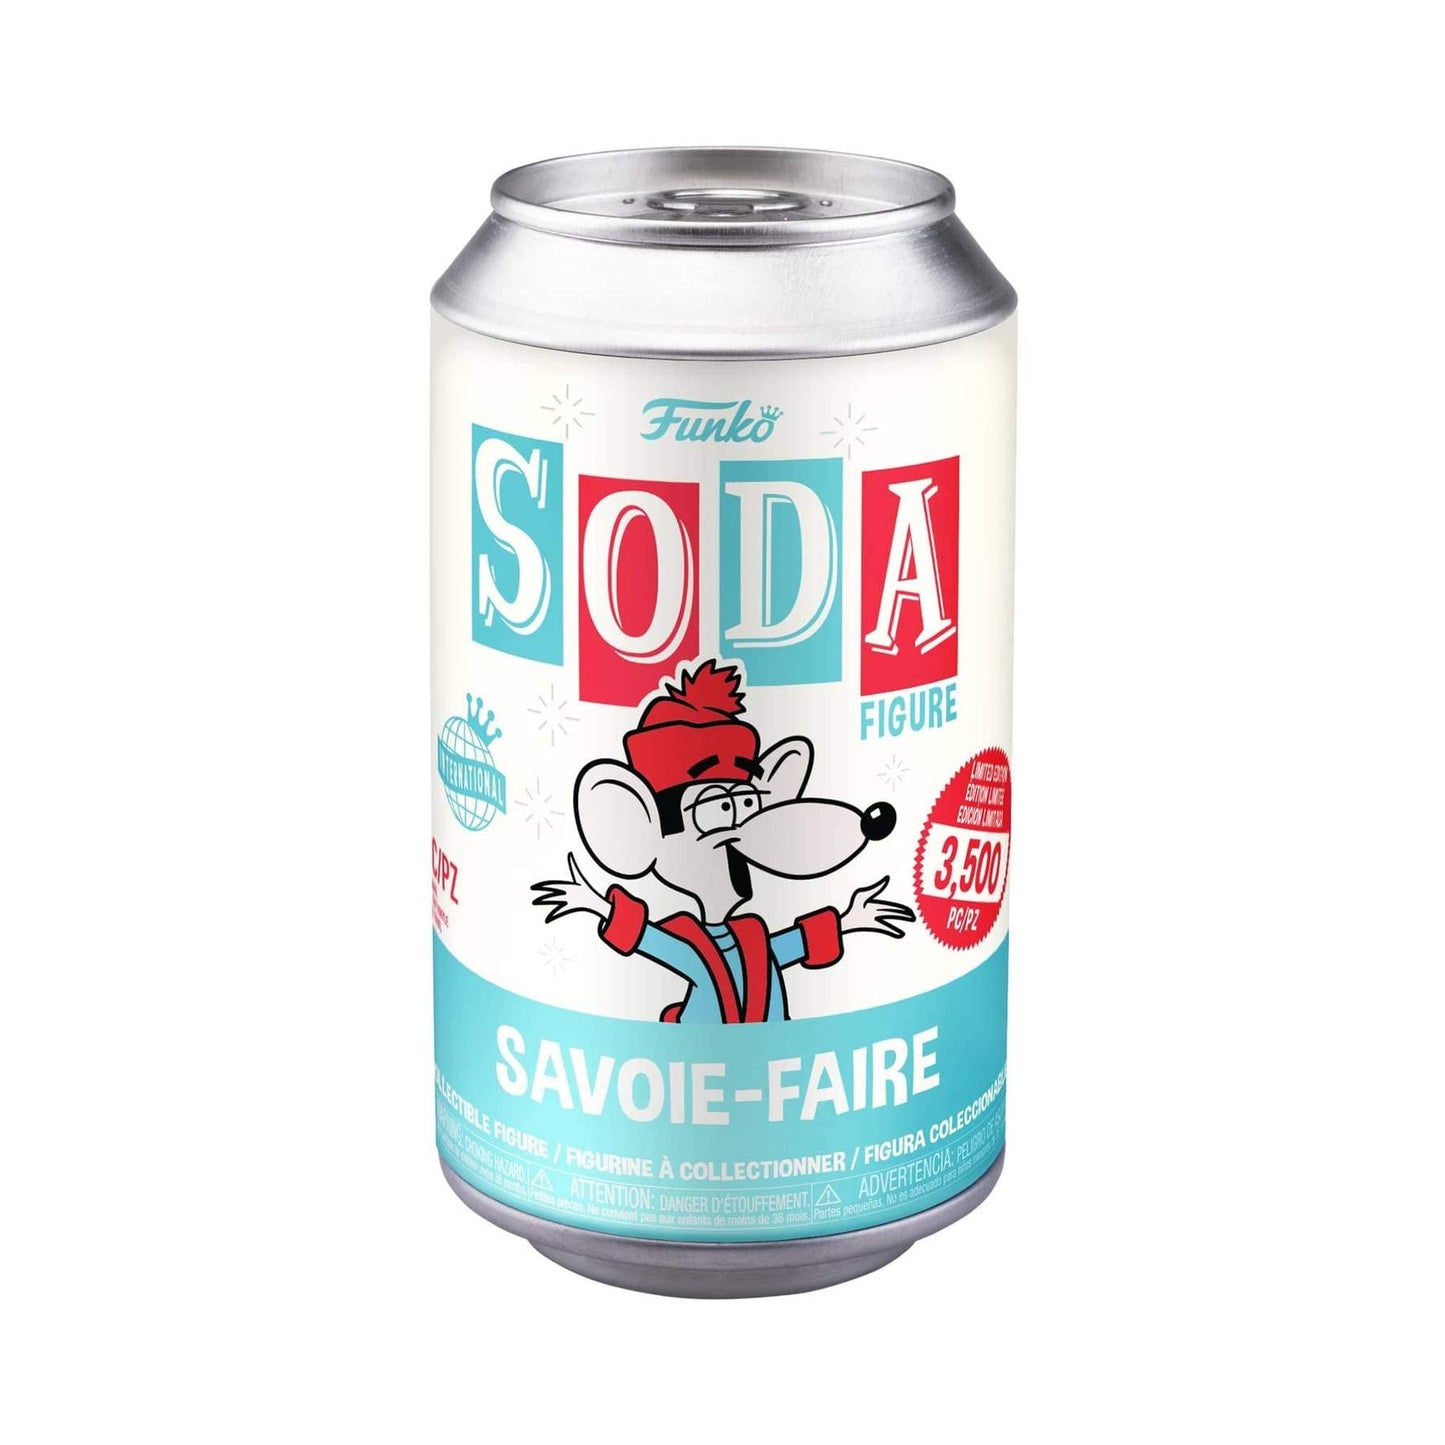 Funko Soda Klondike Kat - Savoie-Faire